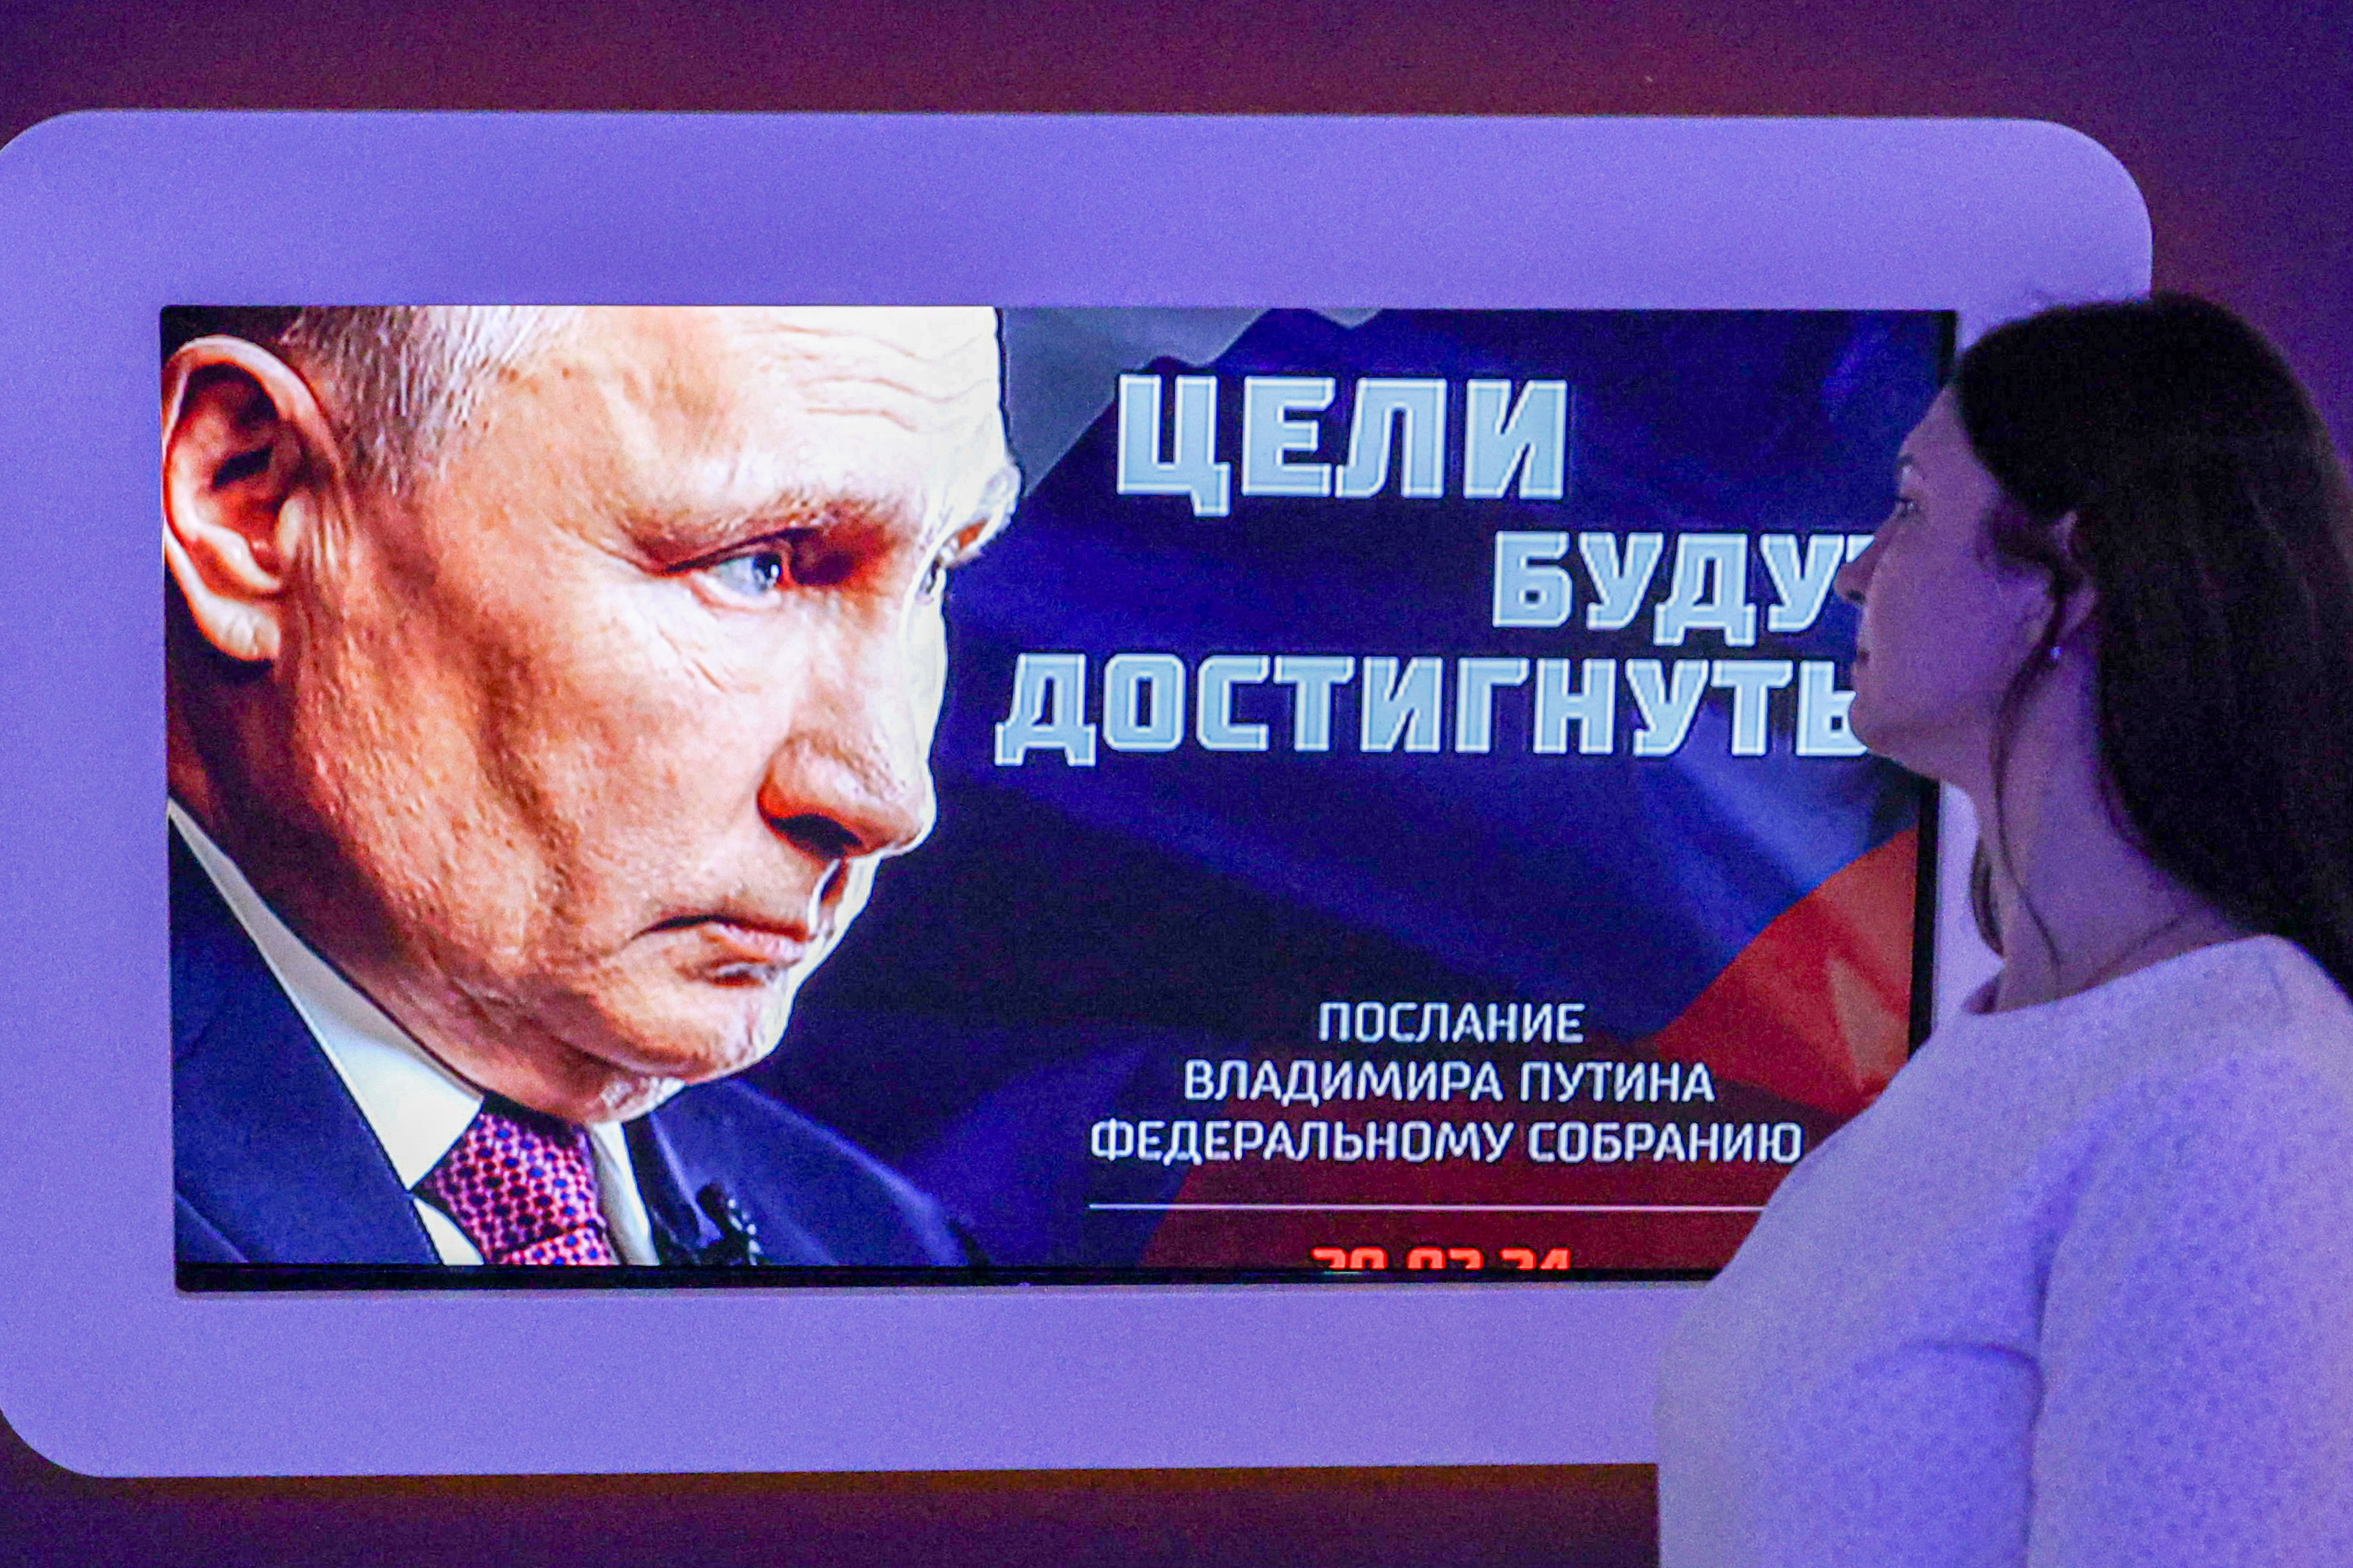 오는 15~17일(현지시간) 러시아 대통령 선거에서 블라디미르 푸틴 대통령의 당선이 확실시된다. 그가 5선에 성공하면 2030년까지 6년간 대통령직을 이어 가게 된다. 사진은 볼고그라드 시민이 지난달 29일 푸틴의 연두회견 방송을 지켜보는 모습. 타스